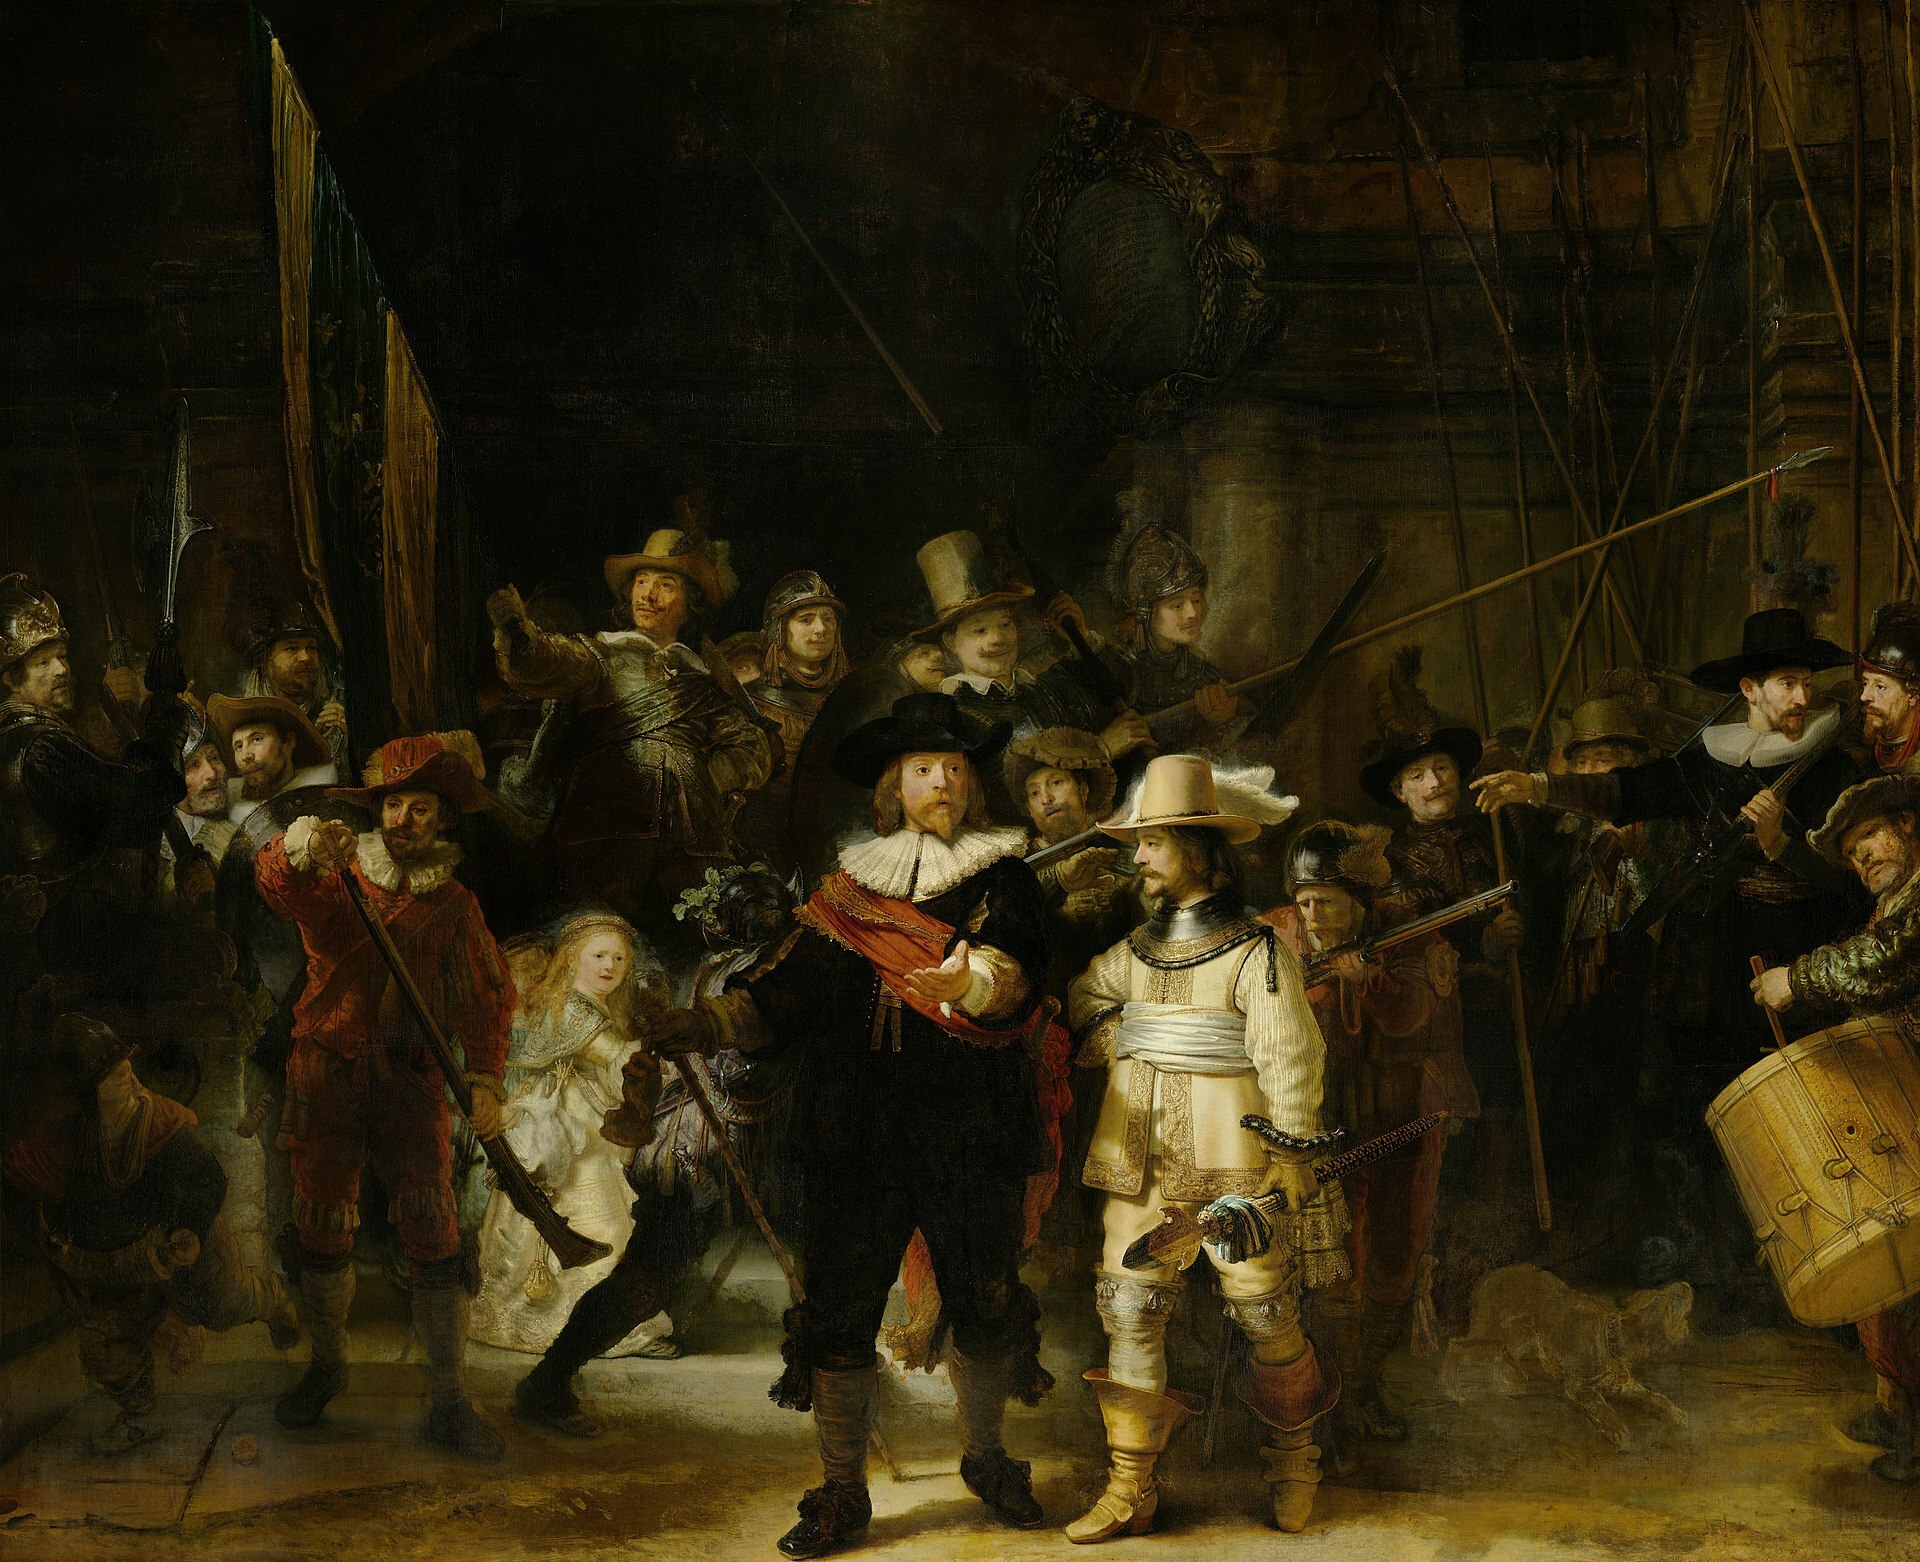 レンブラント・ファン・レイン《夜警》1642年、アムステルダム国立美術館